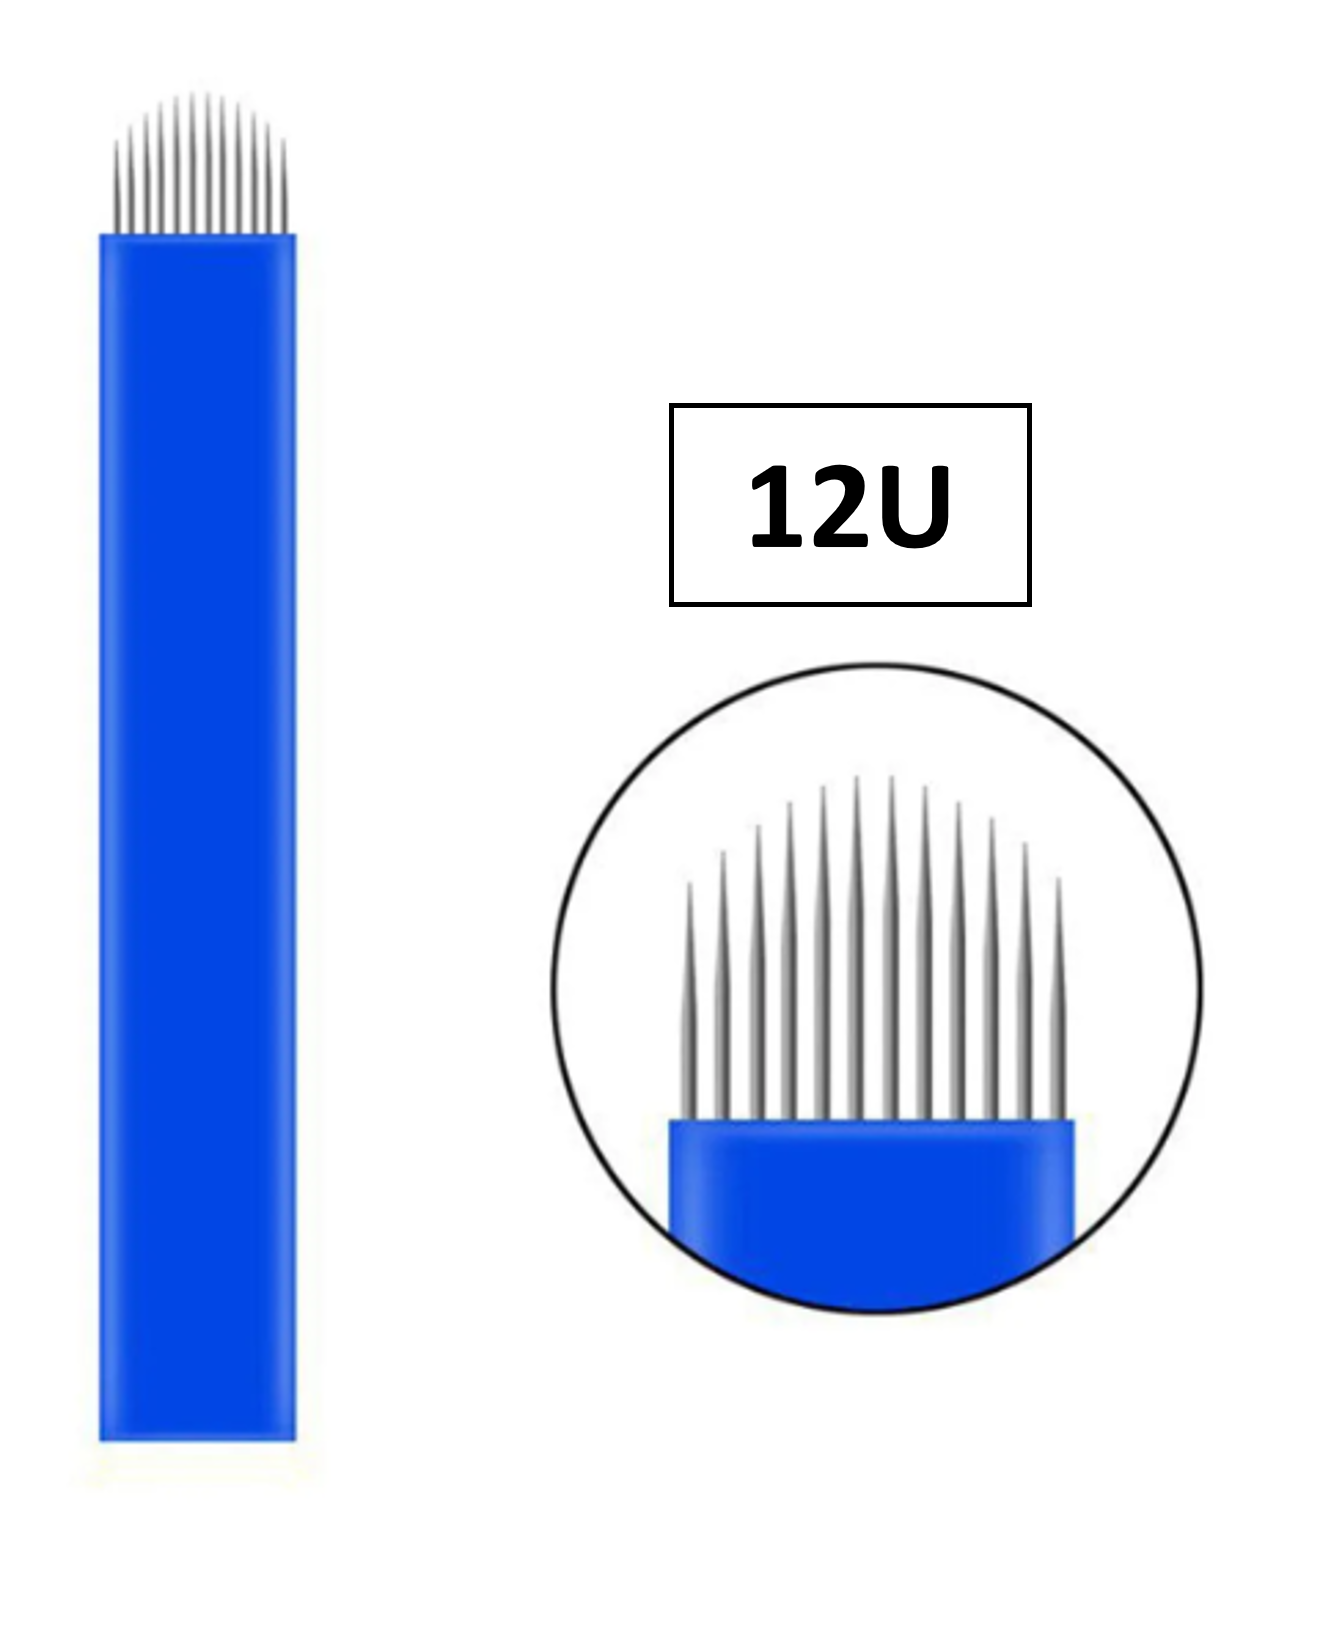 Kozmetiklab Microblading İğnesi 12U (0,20mm)